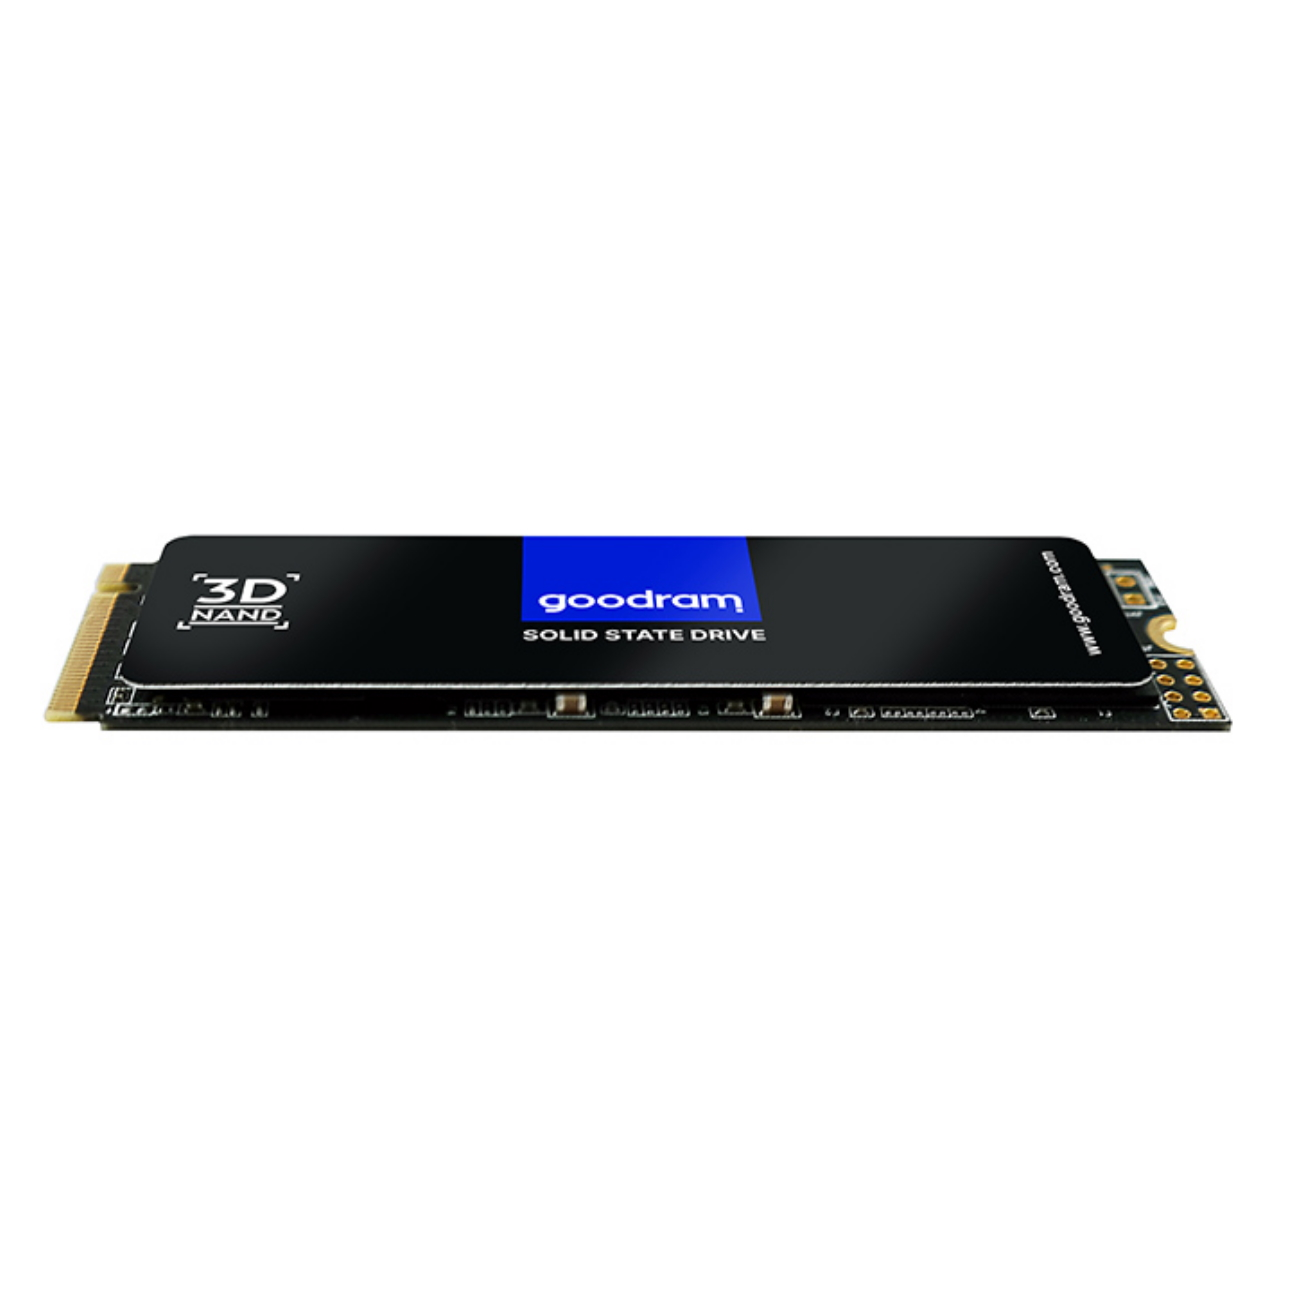 GB, intern GOOD RETAIL, 1TB 2280 PCIe SSD M.2 mSSD, 1000 PX500 3x4 RAM